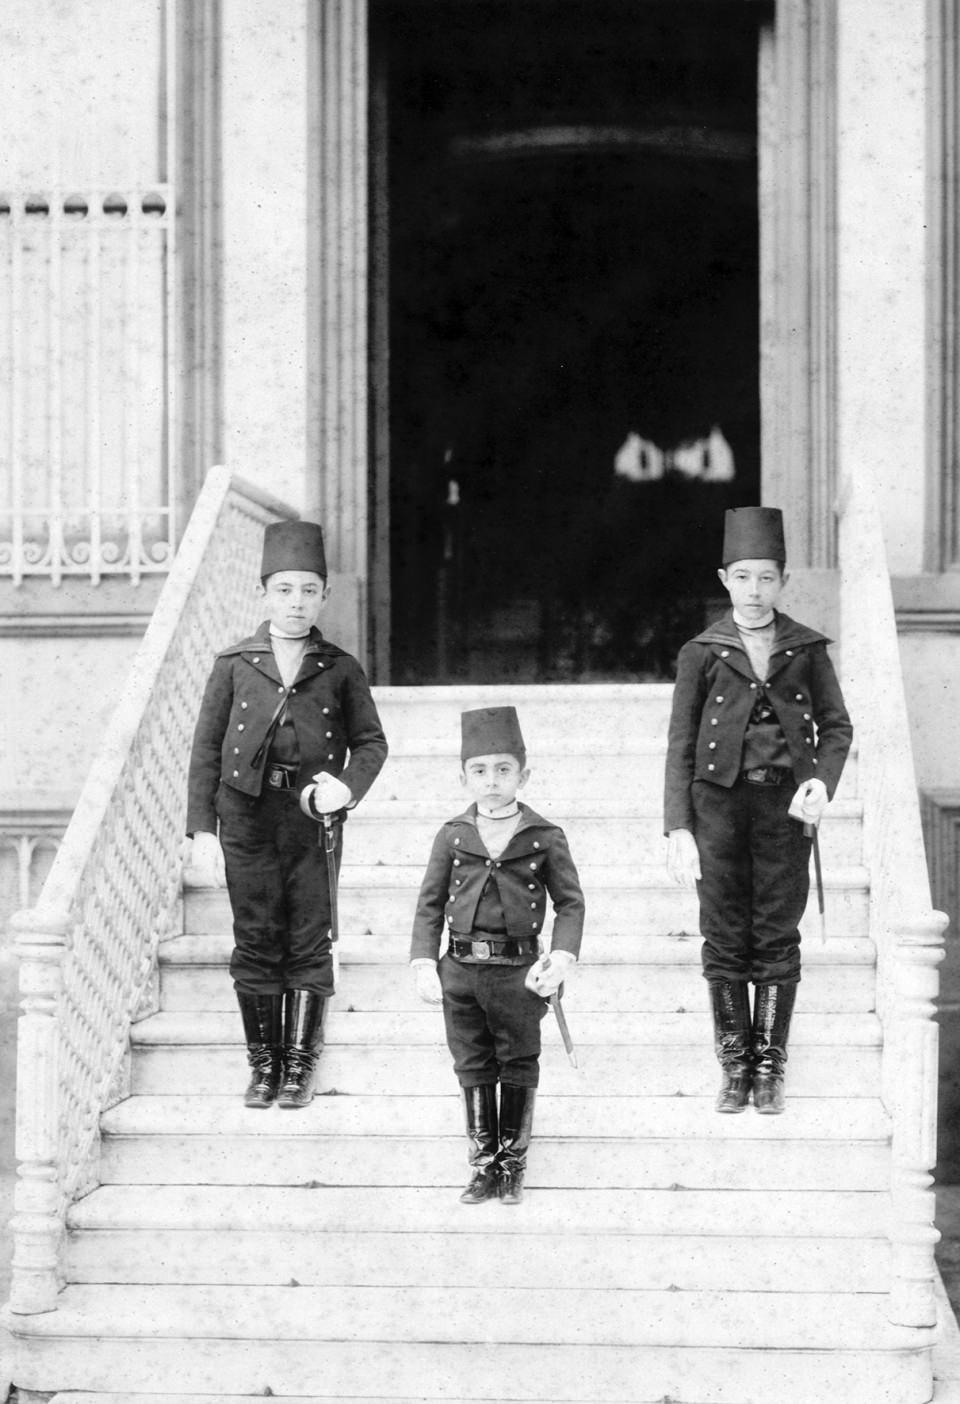 <p>Sultan II. Abdülhamid’in çektirdiği fotoğraflardan oluşan Yıldız Arşivi’nden, sultanın ailesini ve Yıldız Sarayı’nın günlük yaşamını konu alan kitap, saraya ve saray yaşamına farklı bir bakış açısı getiriyor.<br />
<br />
<strong>Mehmed Burhaneddin Efendi</strong></p>

<p> </p>
